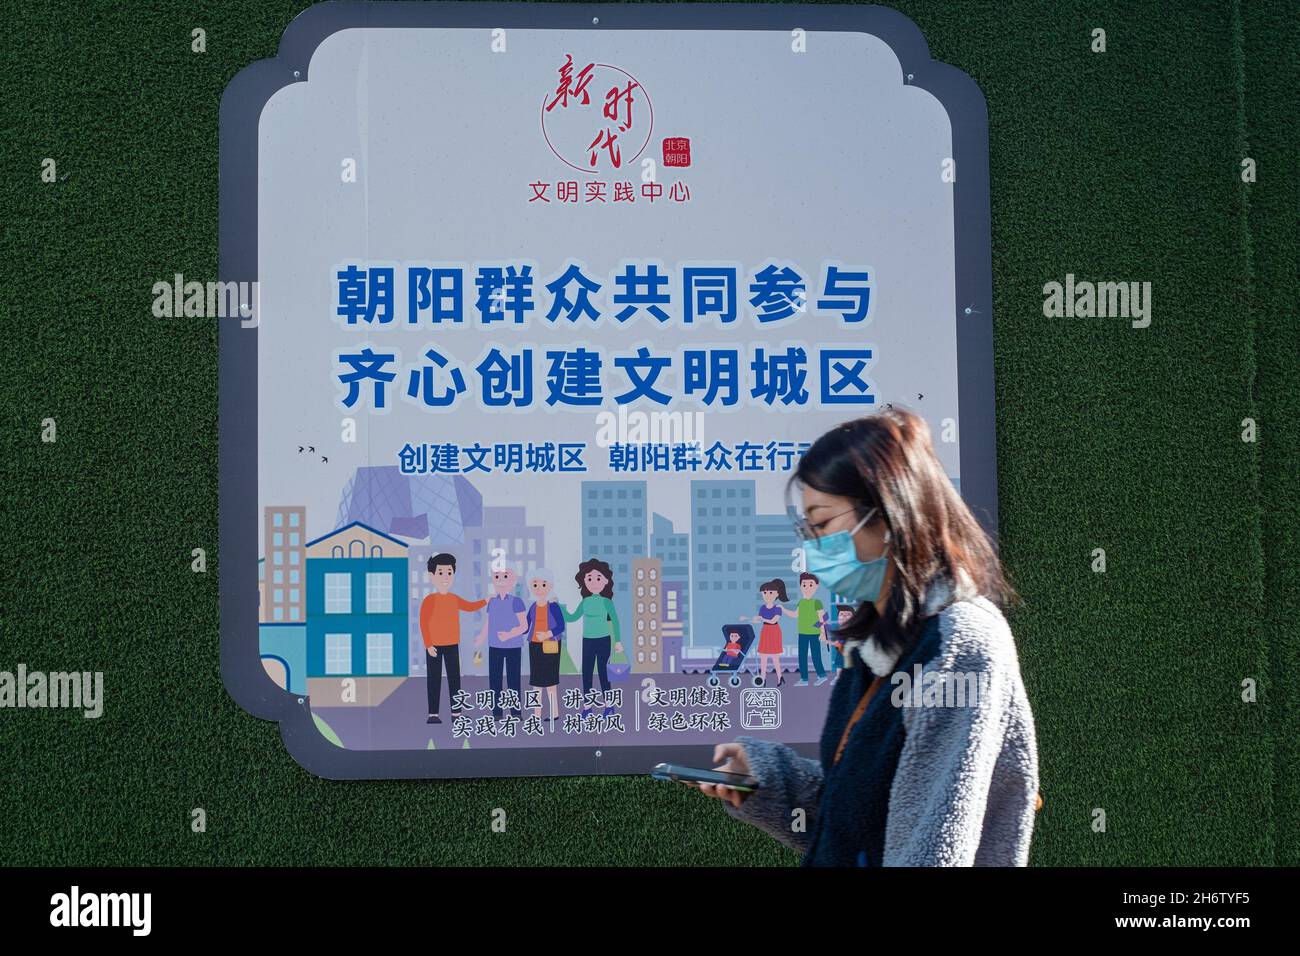 Une jeune fille passe devant un panneau publicitaire présentant des masses de Chaoyang participe à la création d'une ville civilisée à Beijing, en Chine.18 novembre 2021 Banque D'Images